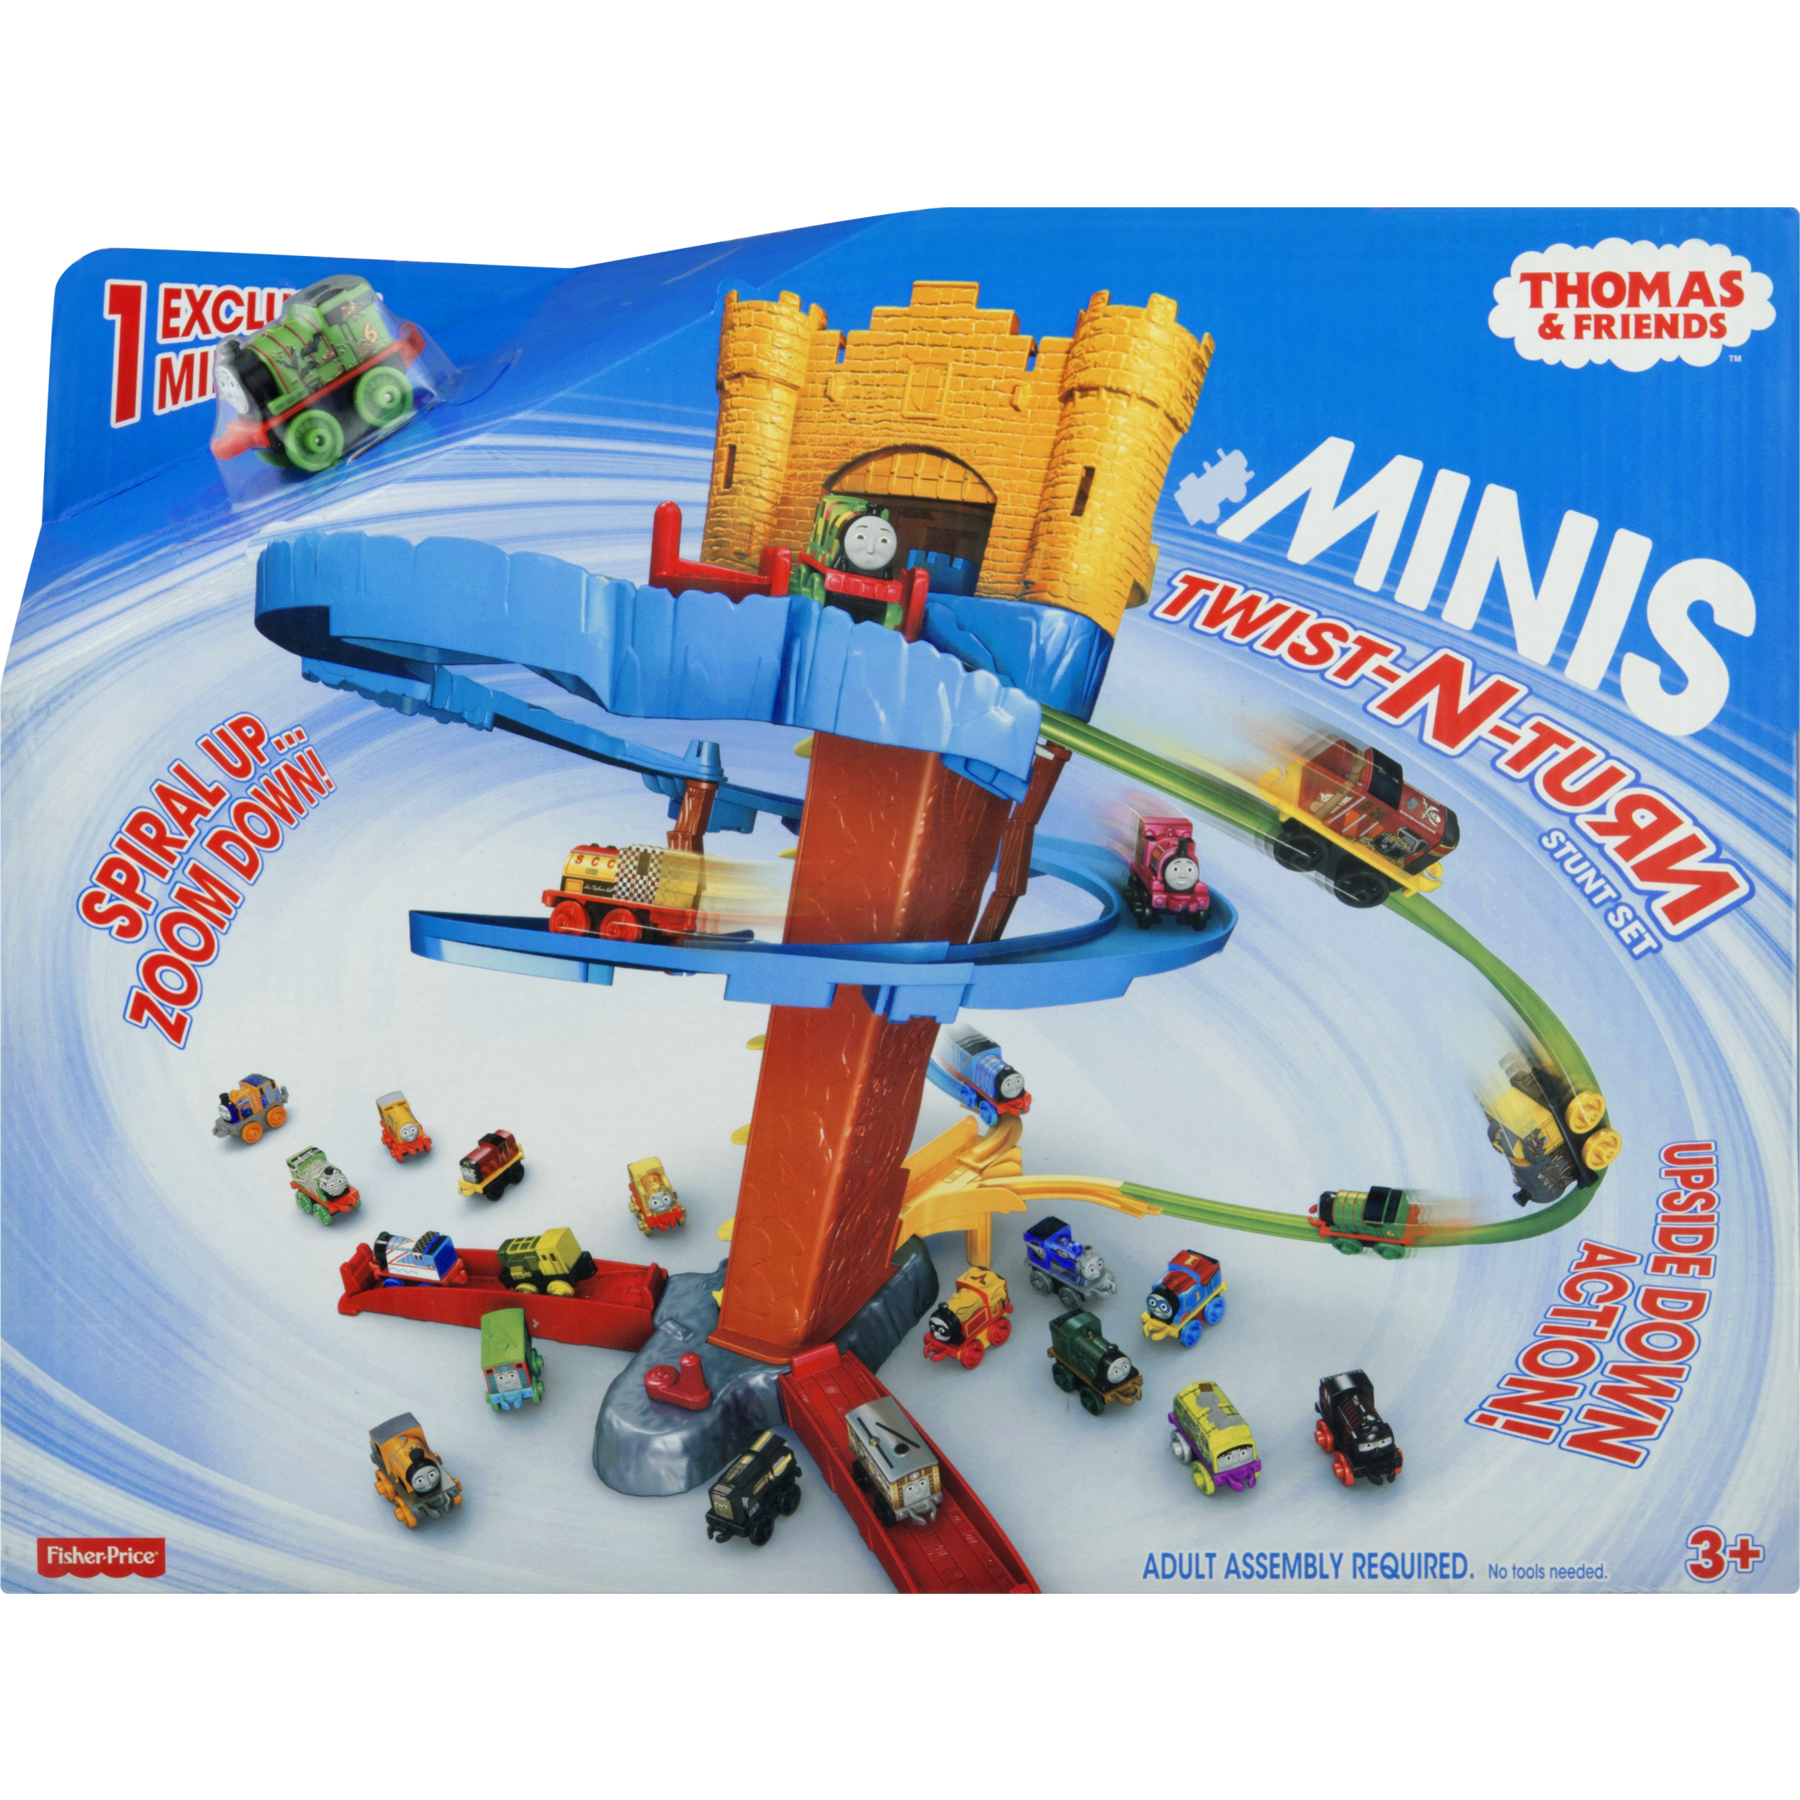 Thomas & Friends MINIS Twist-N-Turn Stunt Set - image 5 of 7